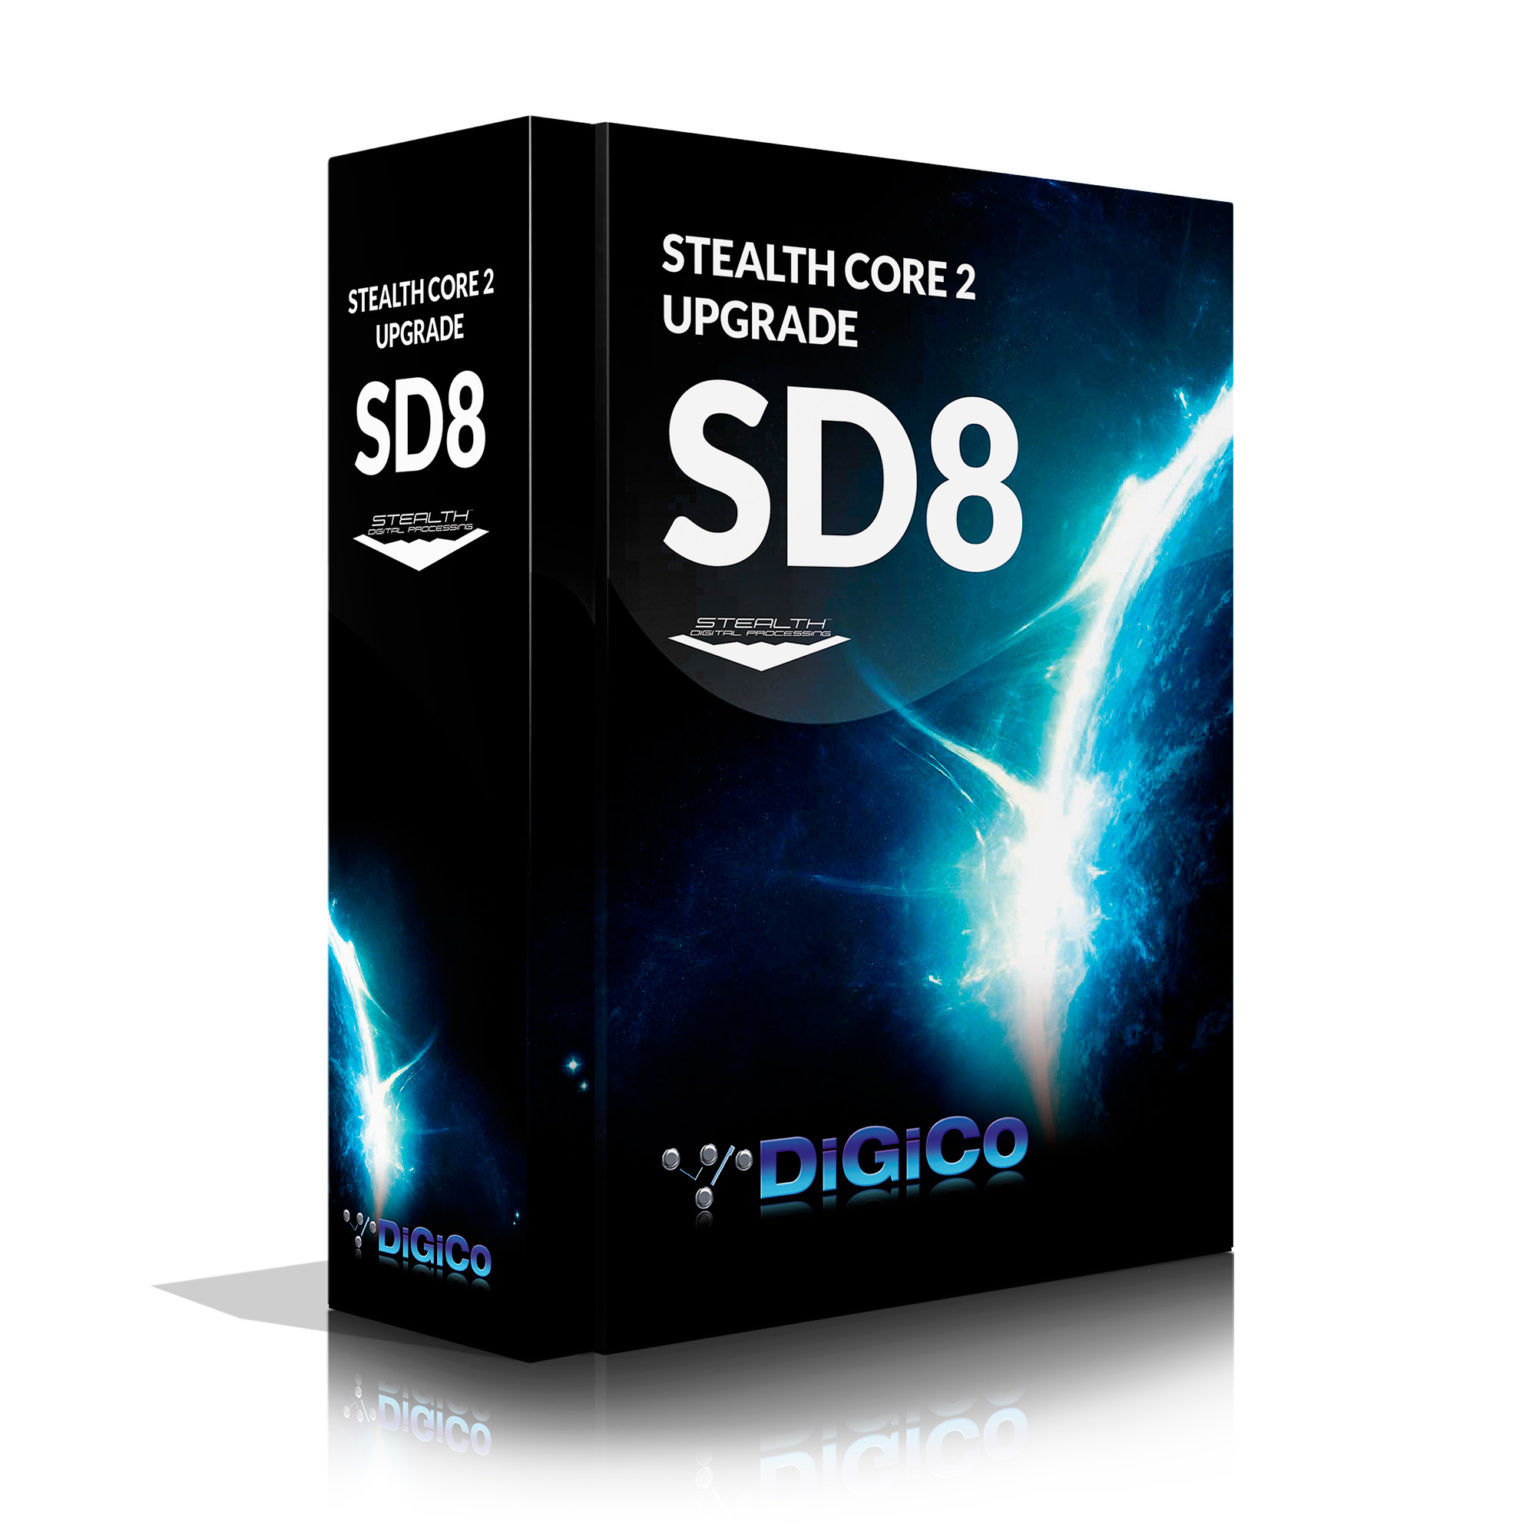 Sd8 Stealth Core 2 Upgrade Digico